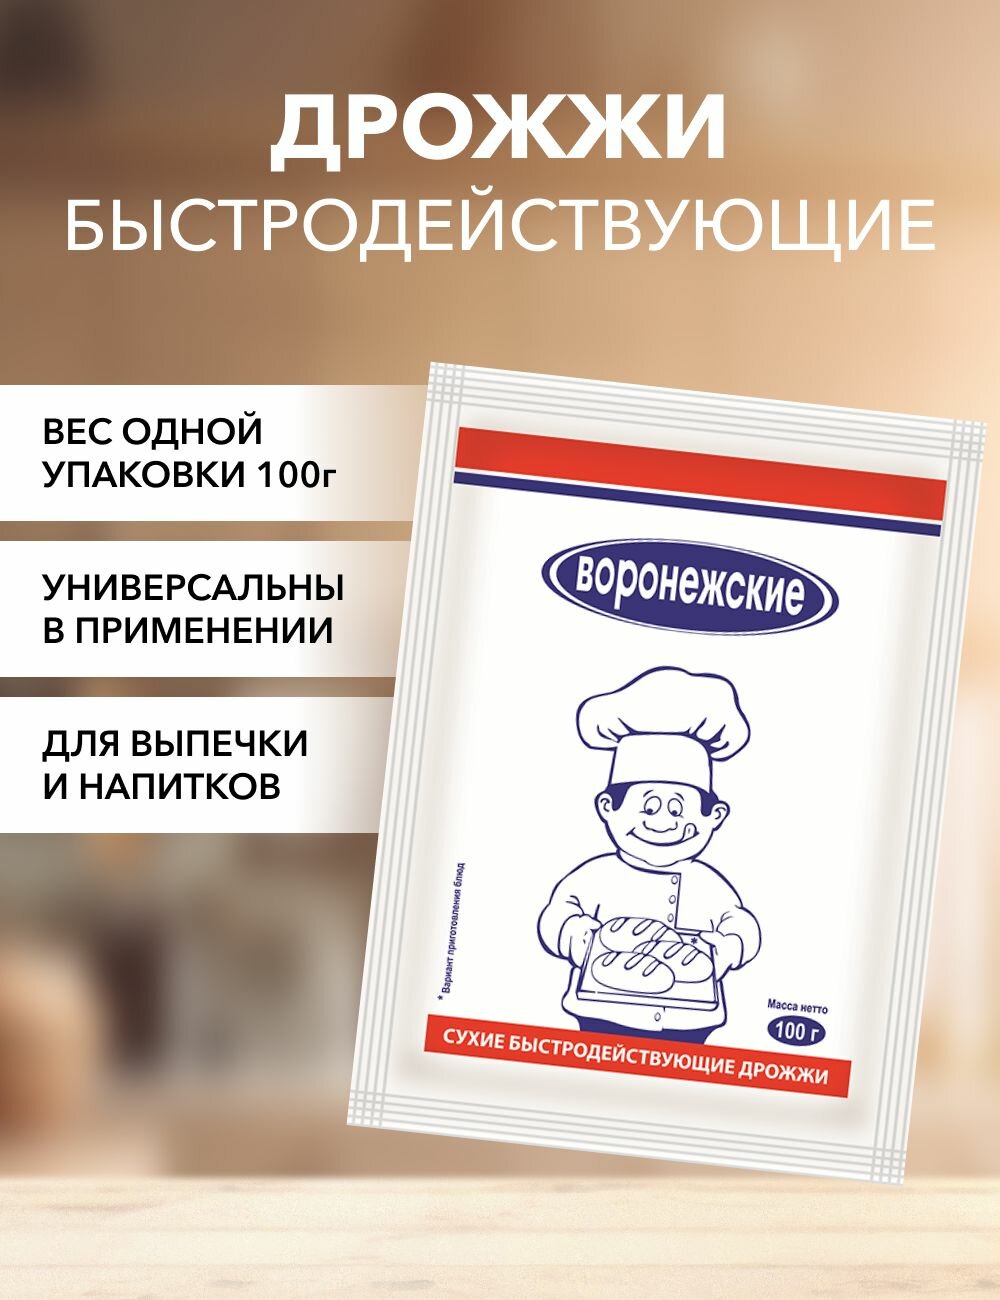 Дрожжи хлебопекарные сухие быстродействующие Воронежские 100г